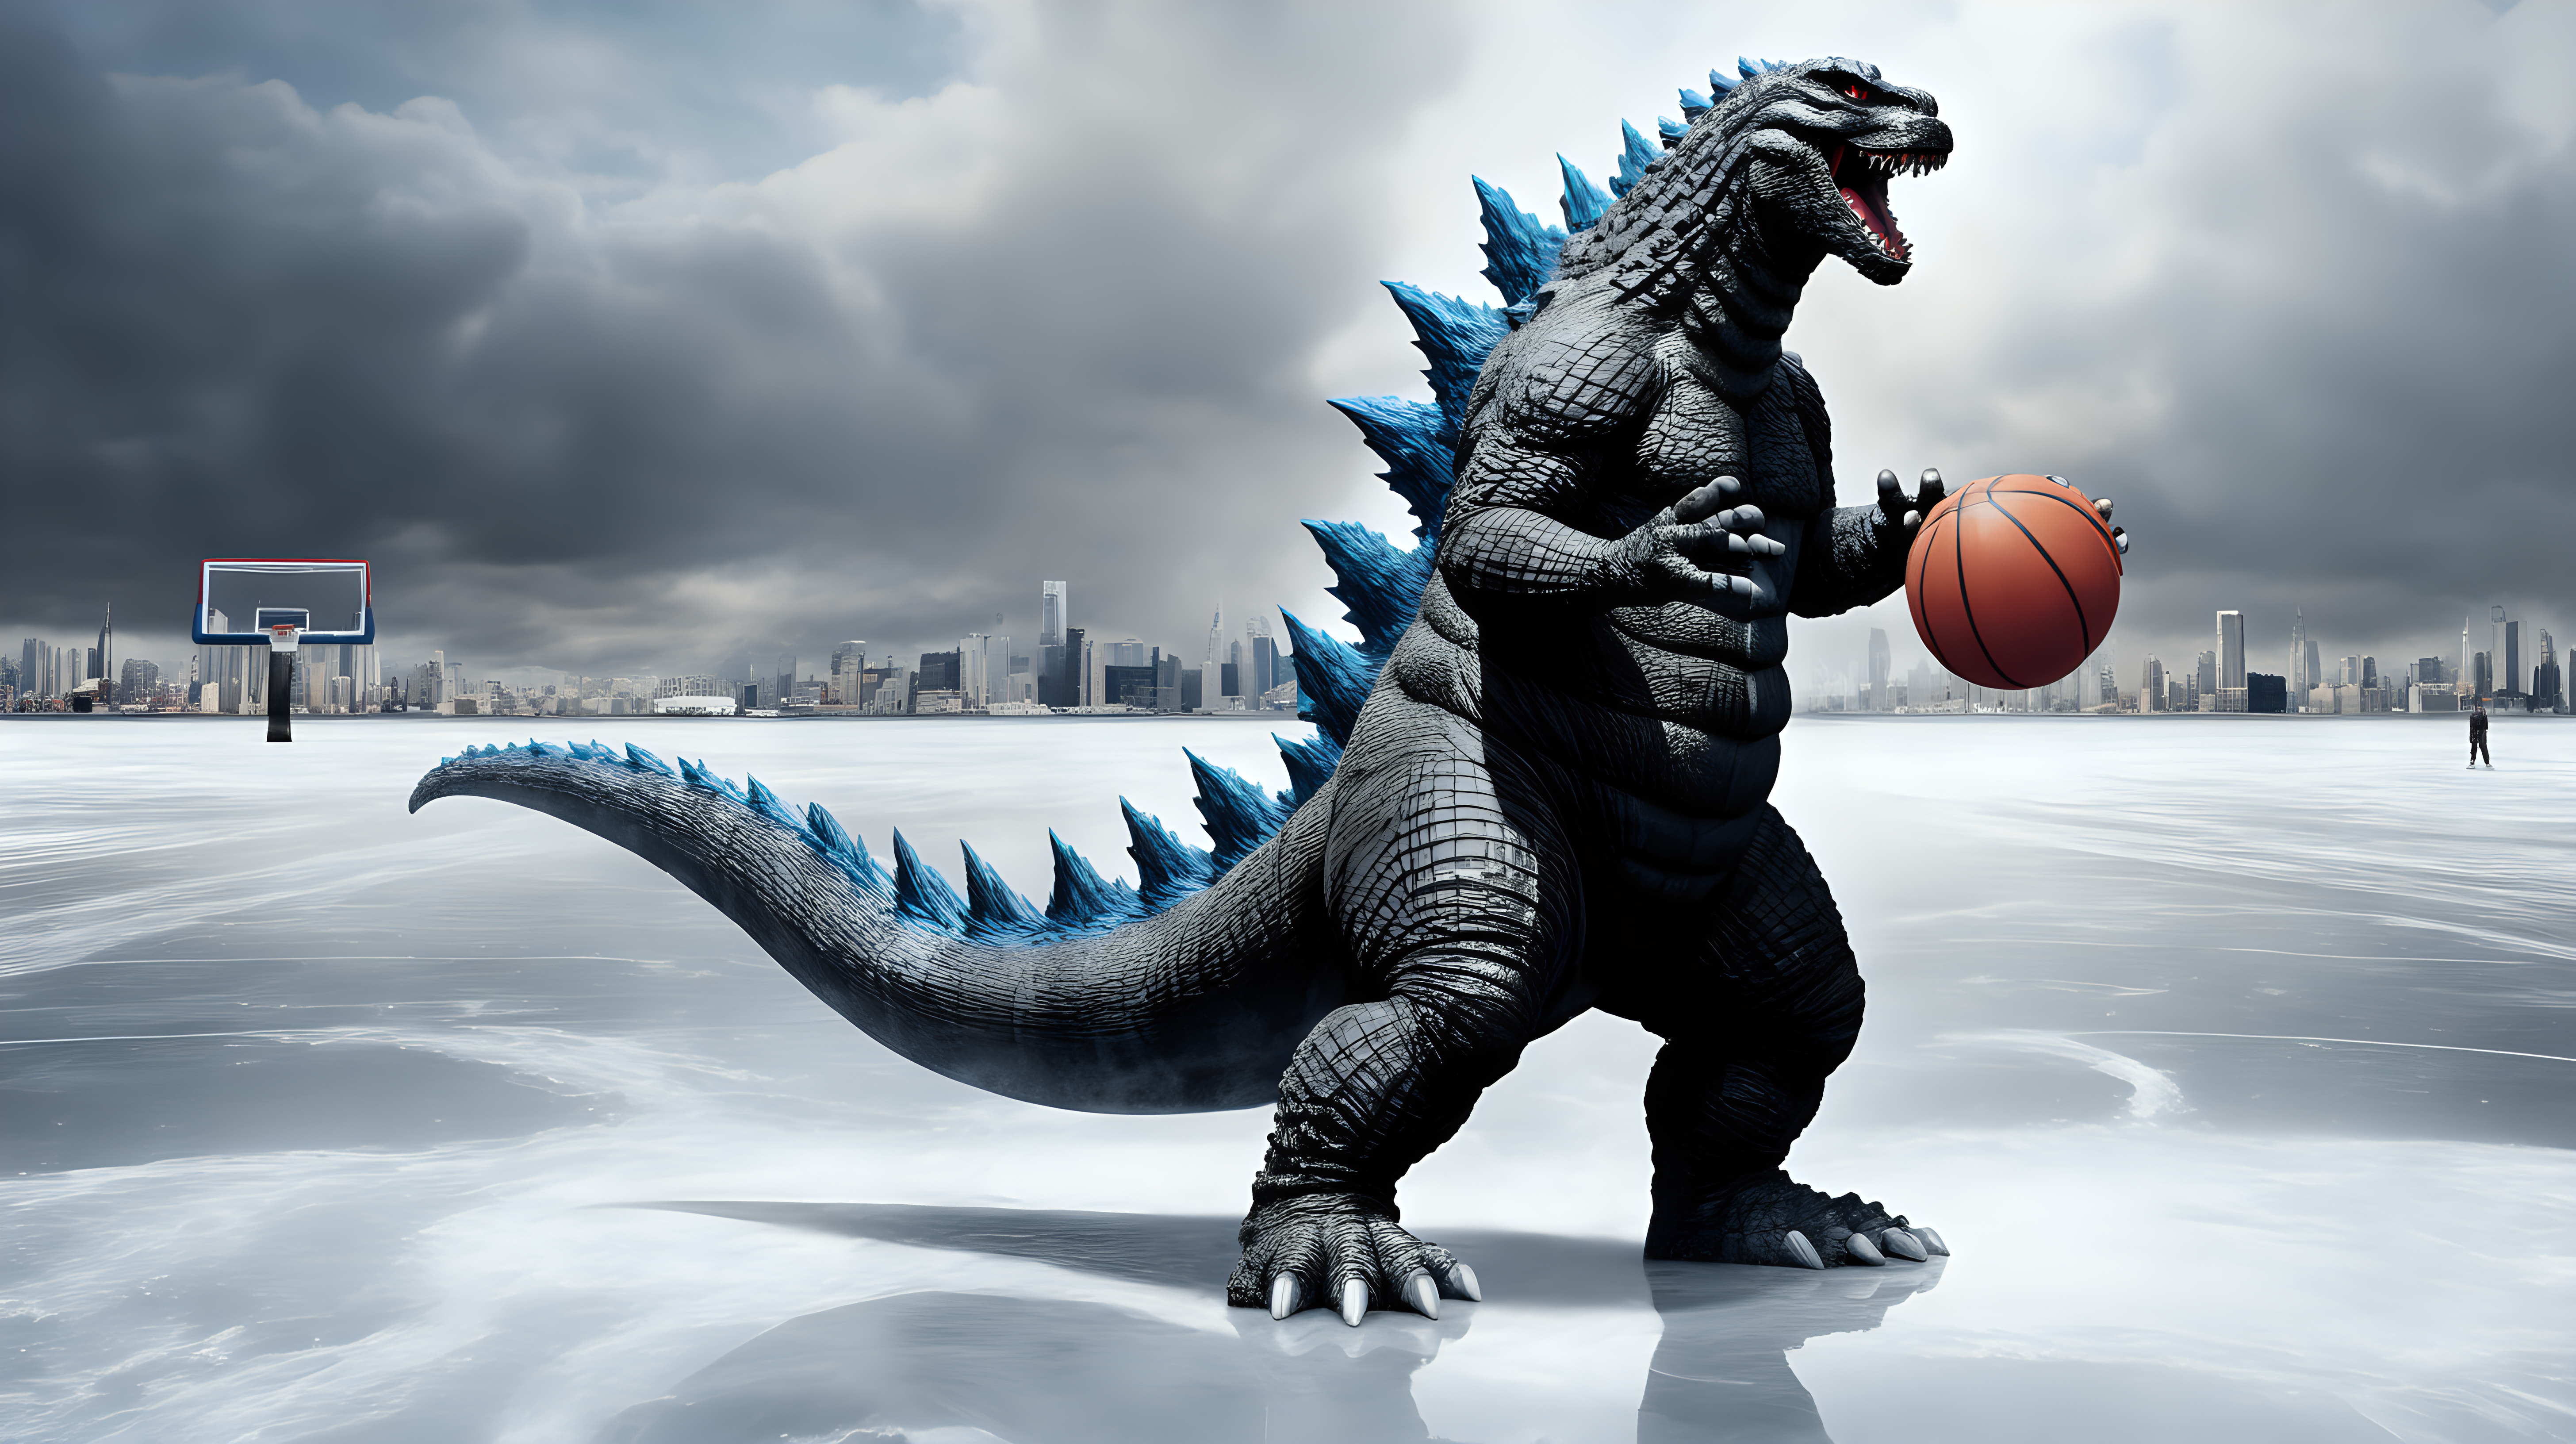 Godzilla playing basketball on ice